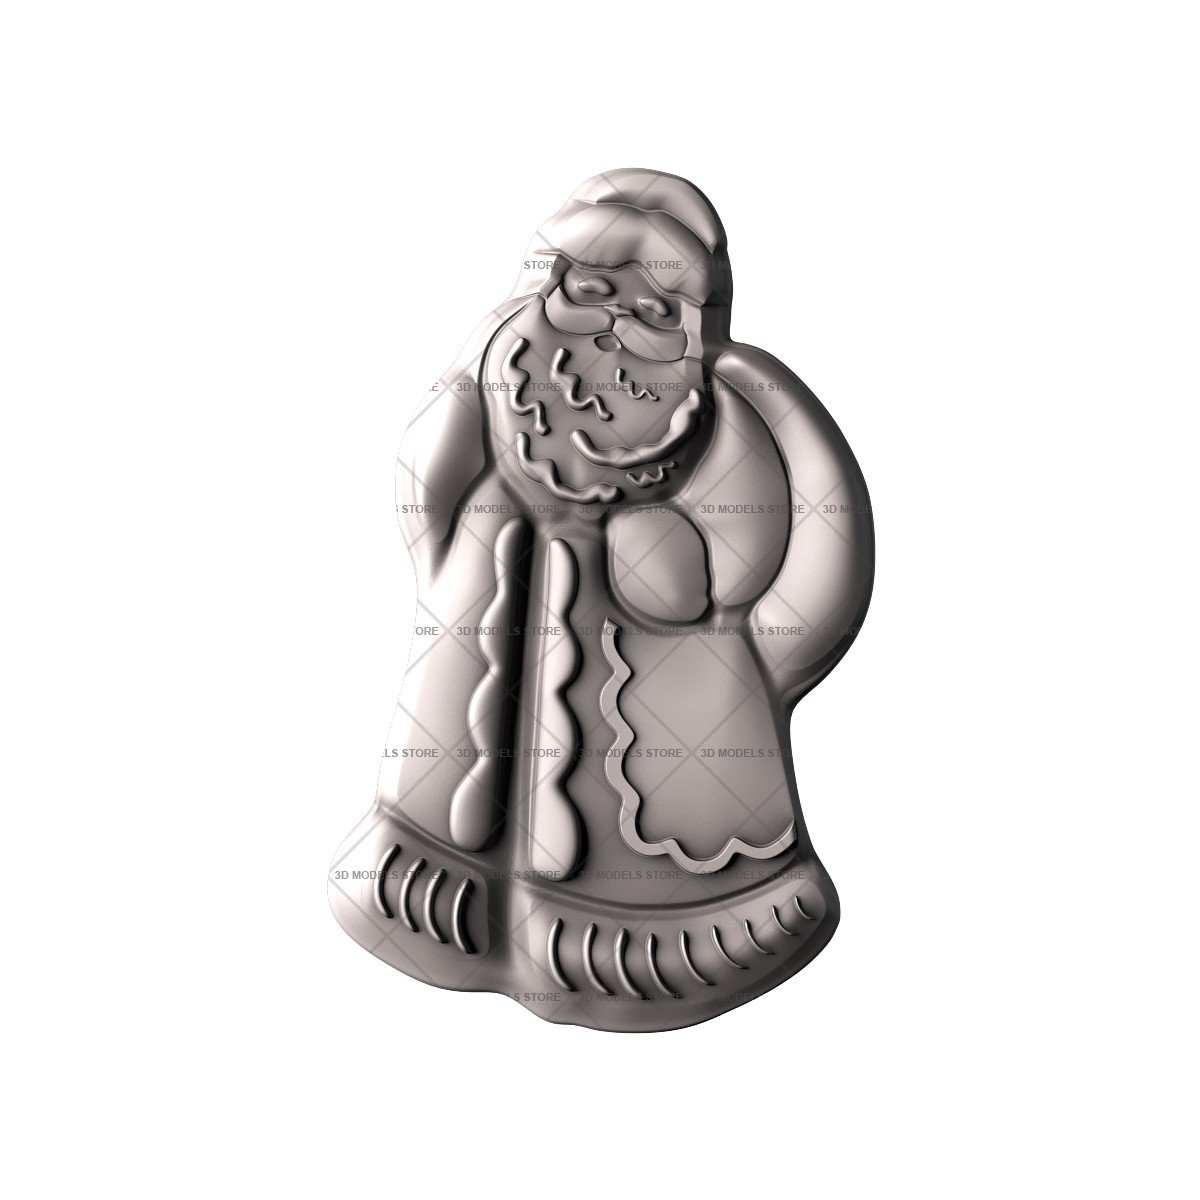 Santa Claus character, 3d models (stl)